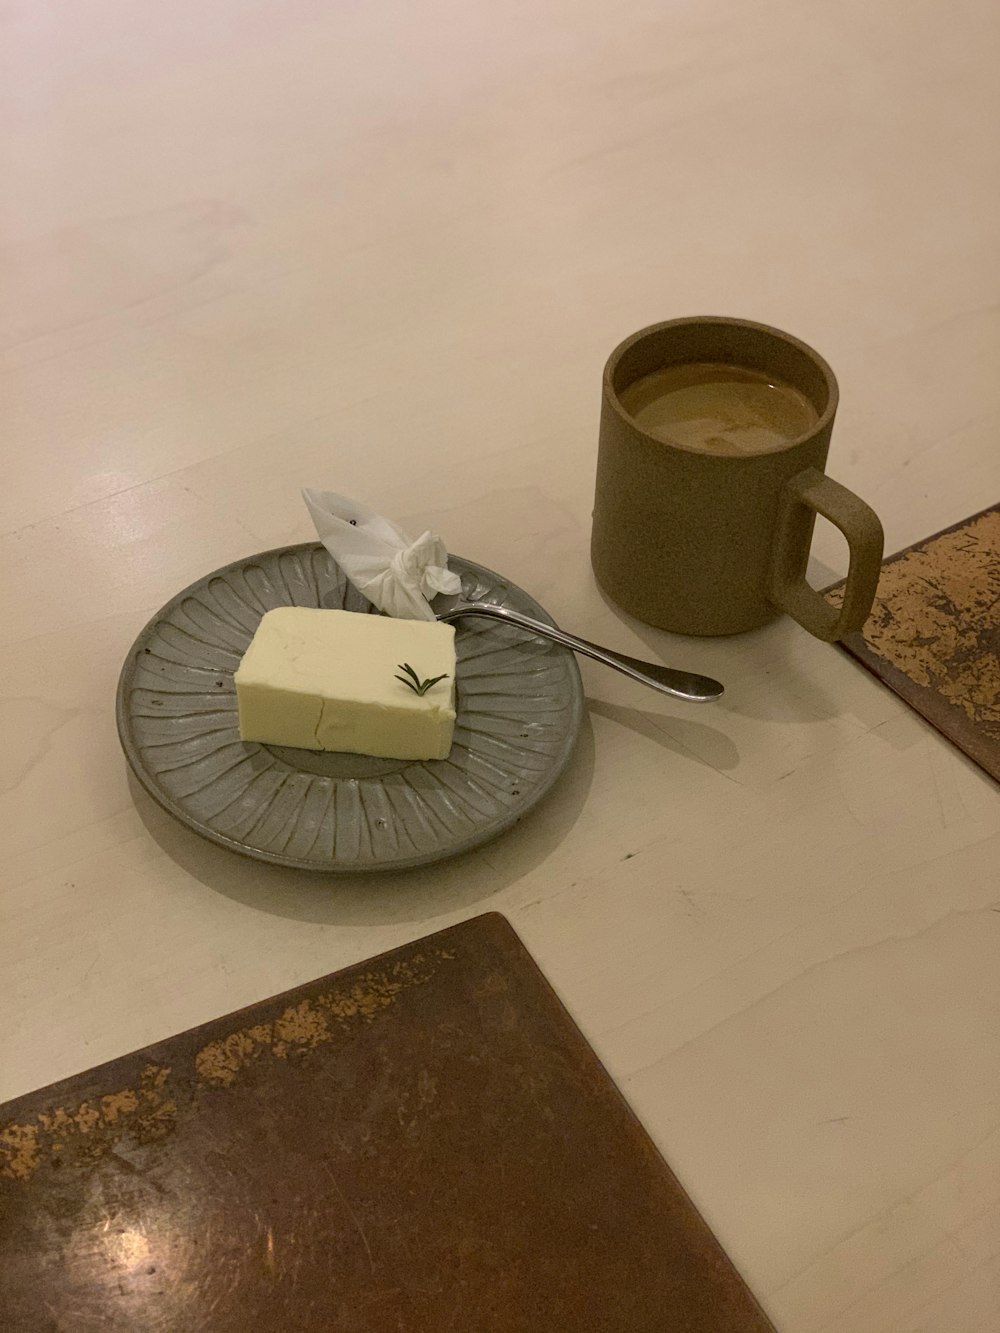 stainless steel fork beside white ceramic mug on brown wooden table